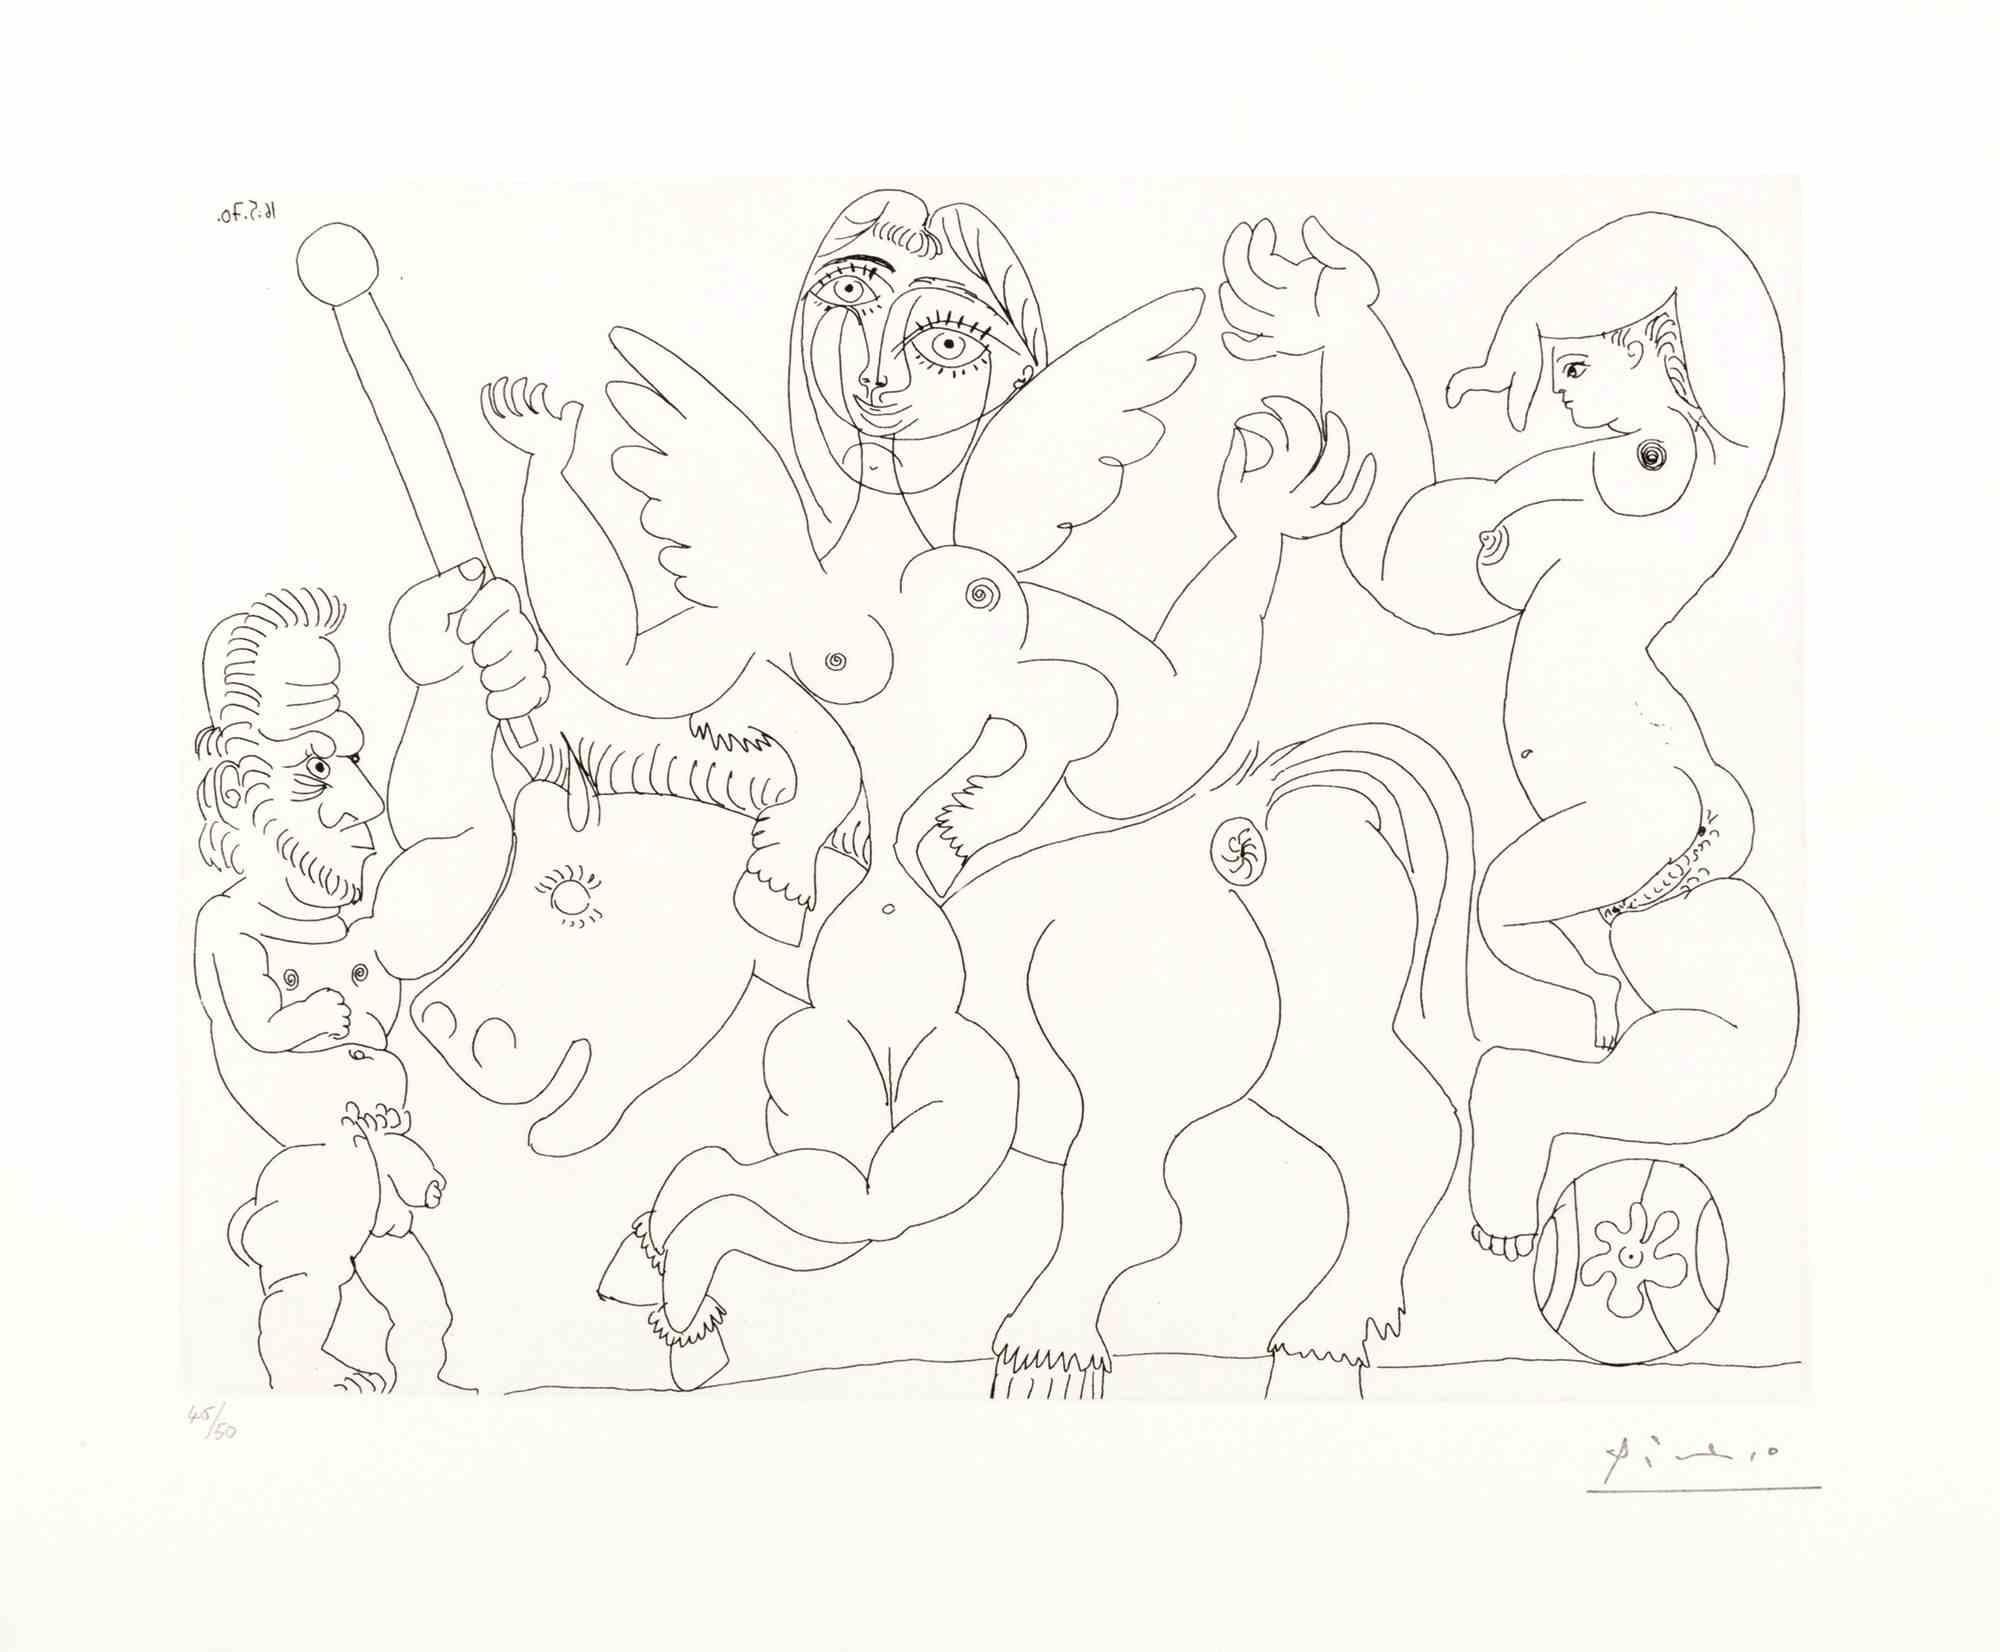 16 Mai 1970 ist ein Kunstwerk von Pablo Picasso aus dem Jahr 1970.

Radierung auf Papier.

Datum auf der Platte aufgedruckt. Signaturstempel des Künstlers unten rechts.

Am unteren Rand mit Bleistift nummeriert.

Auflage 46/50 plus 15